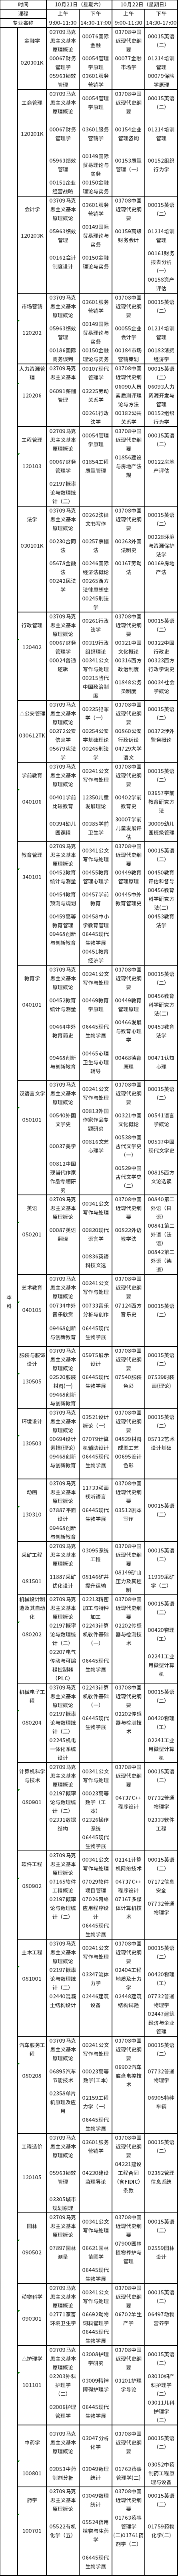 江西省2023年10月高等教育自学考试课程预安排表